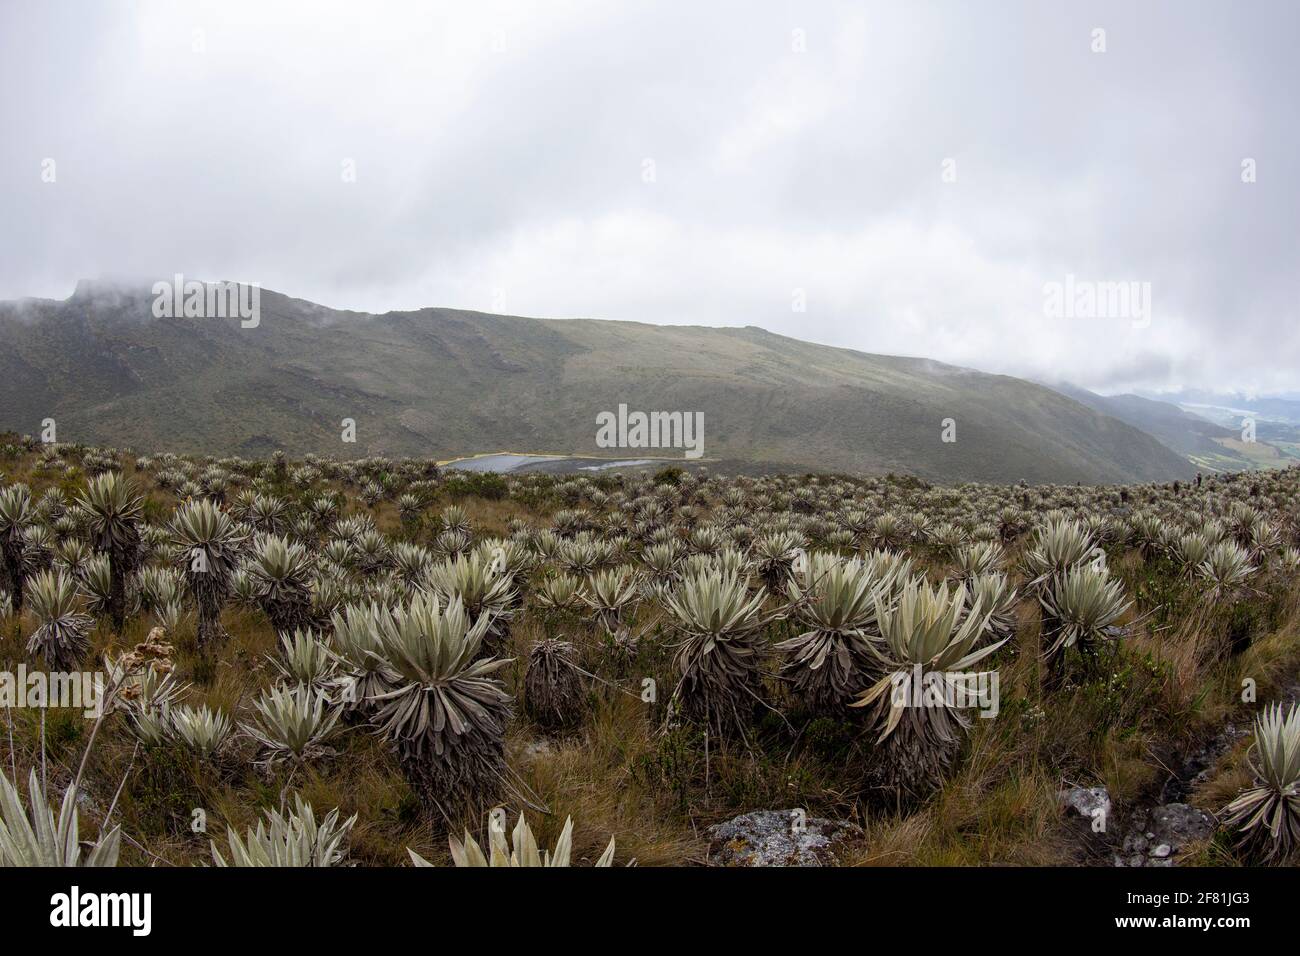 Amazing landscape at Chingaza National Park. Colombia Stock Photo